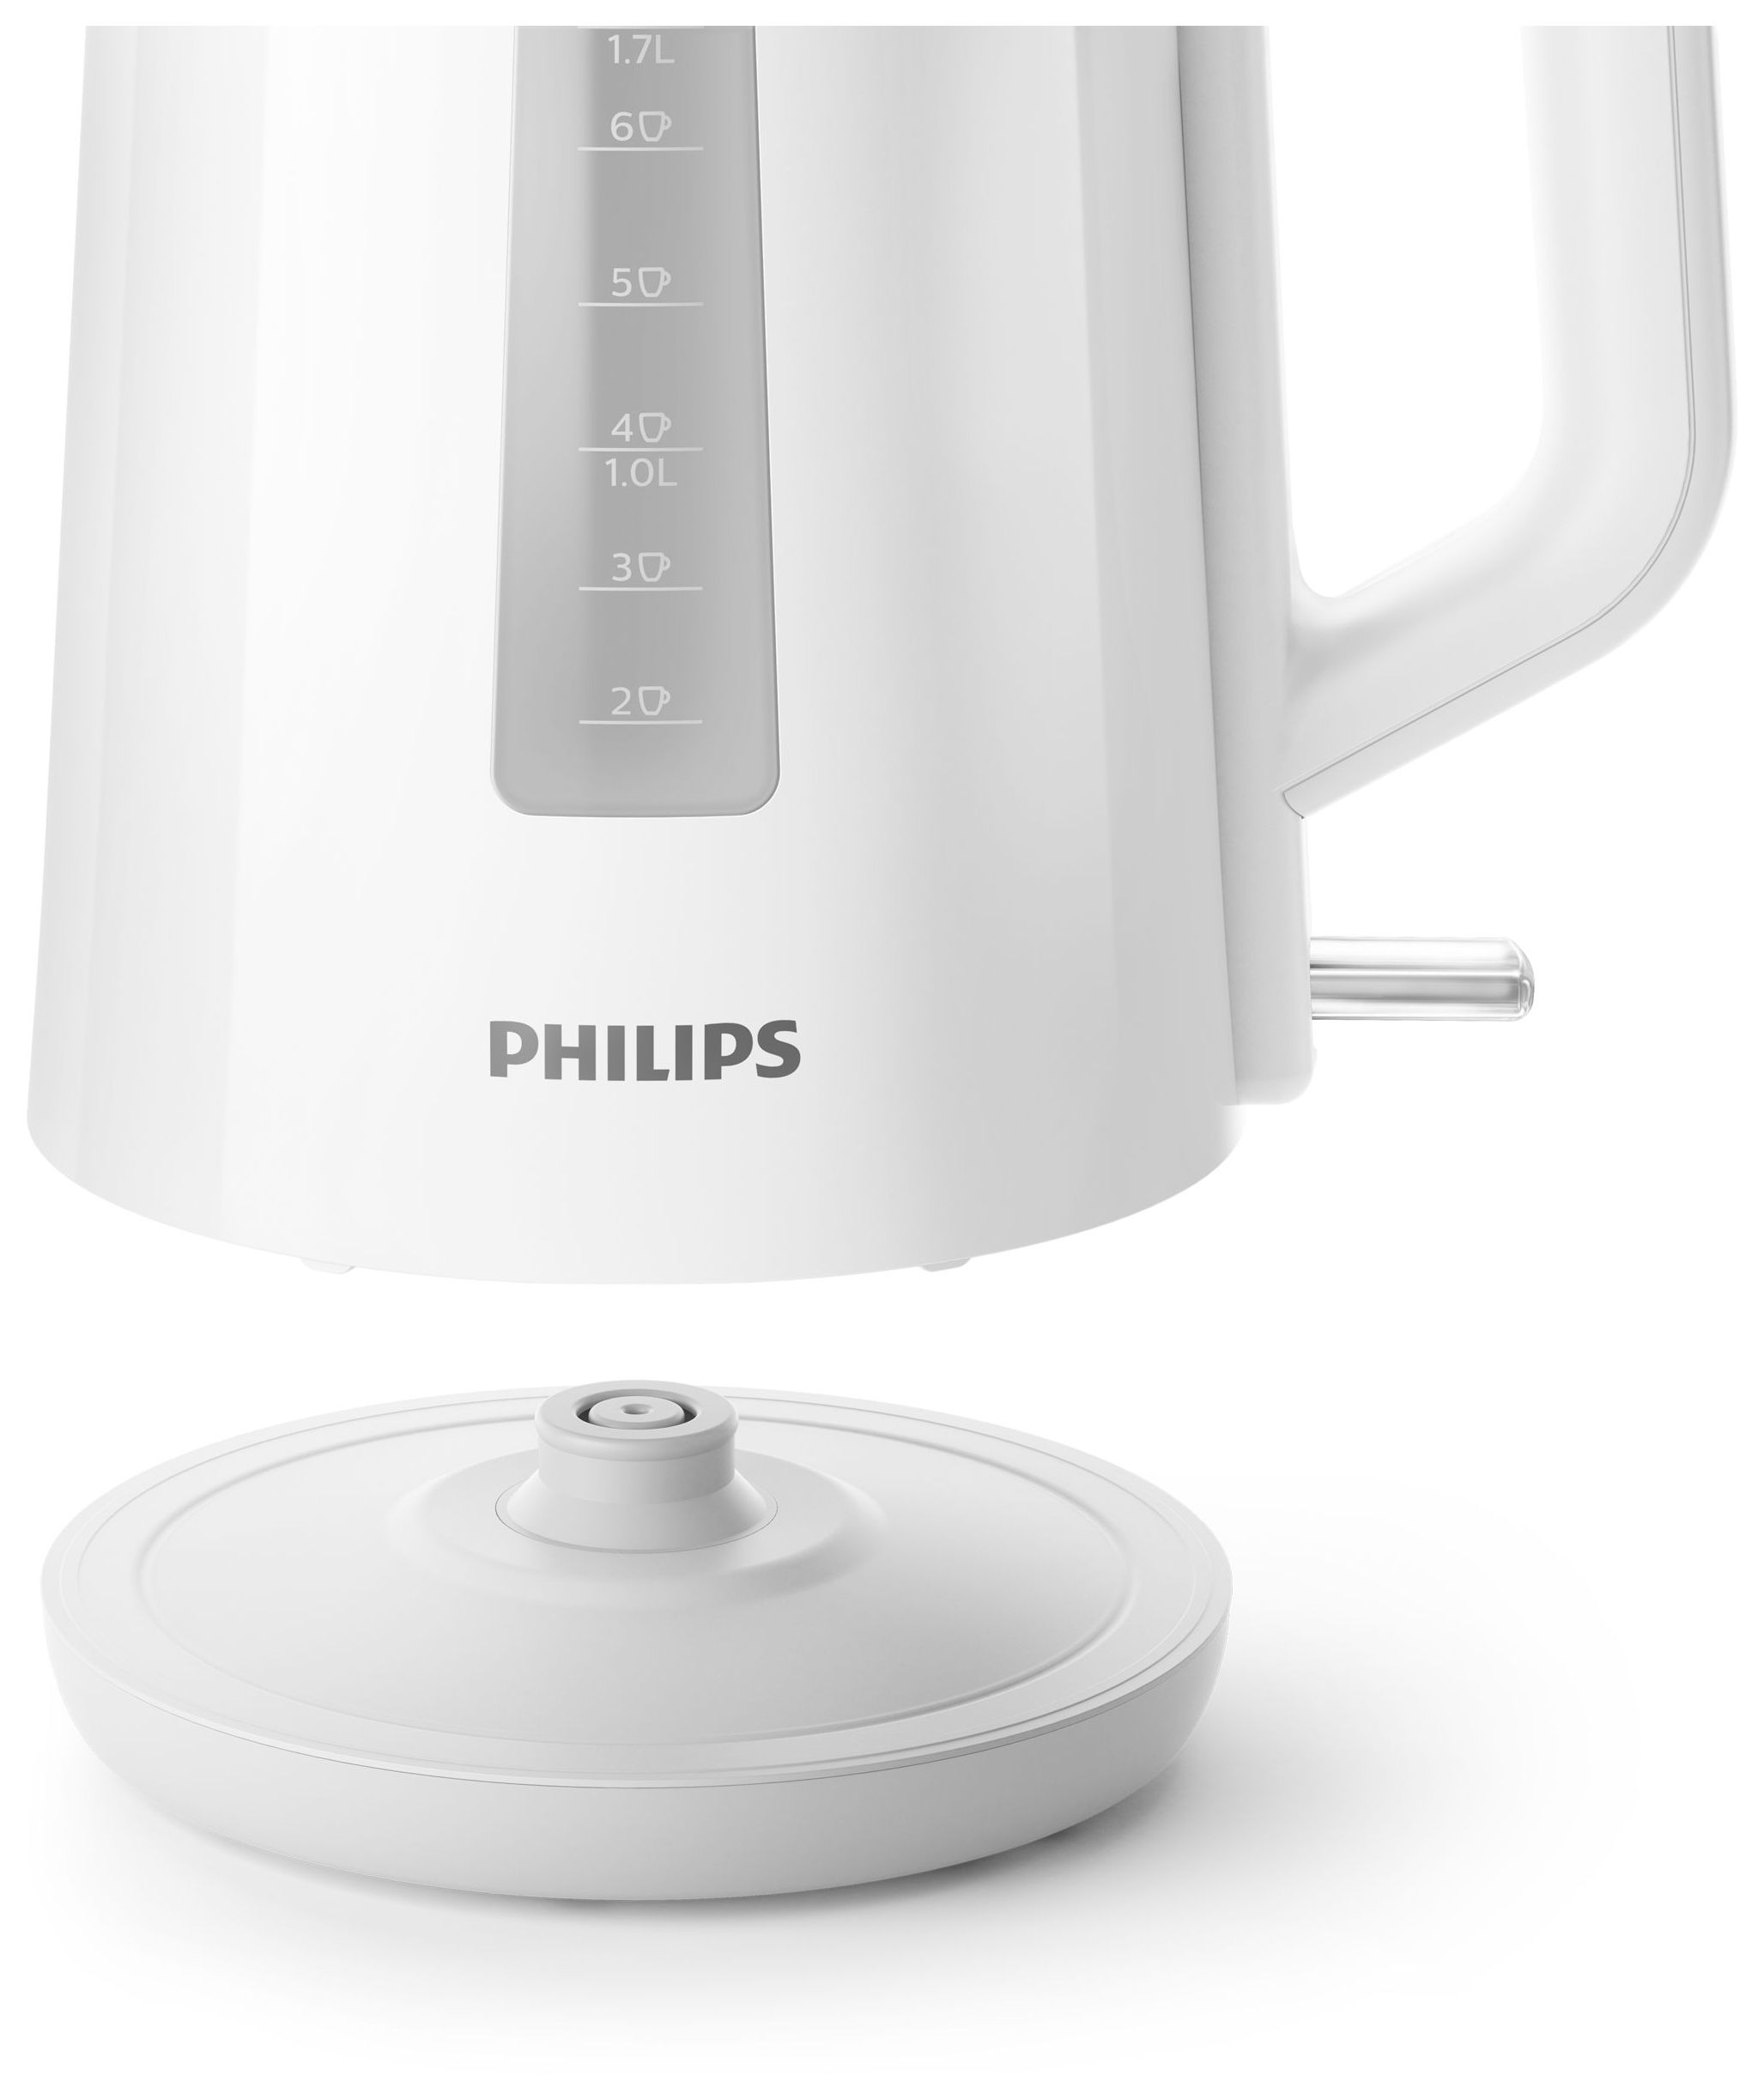 (Weiß) von Philips 2200 Technomarkt series expert HD9318/00 3000 W 1,7 Wasserkocher l